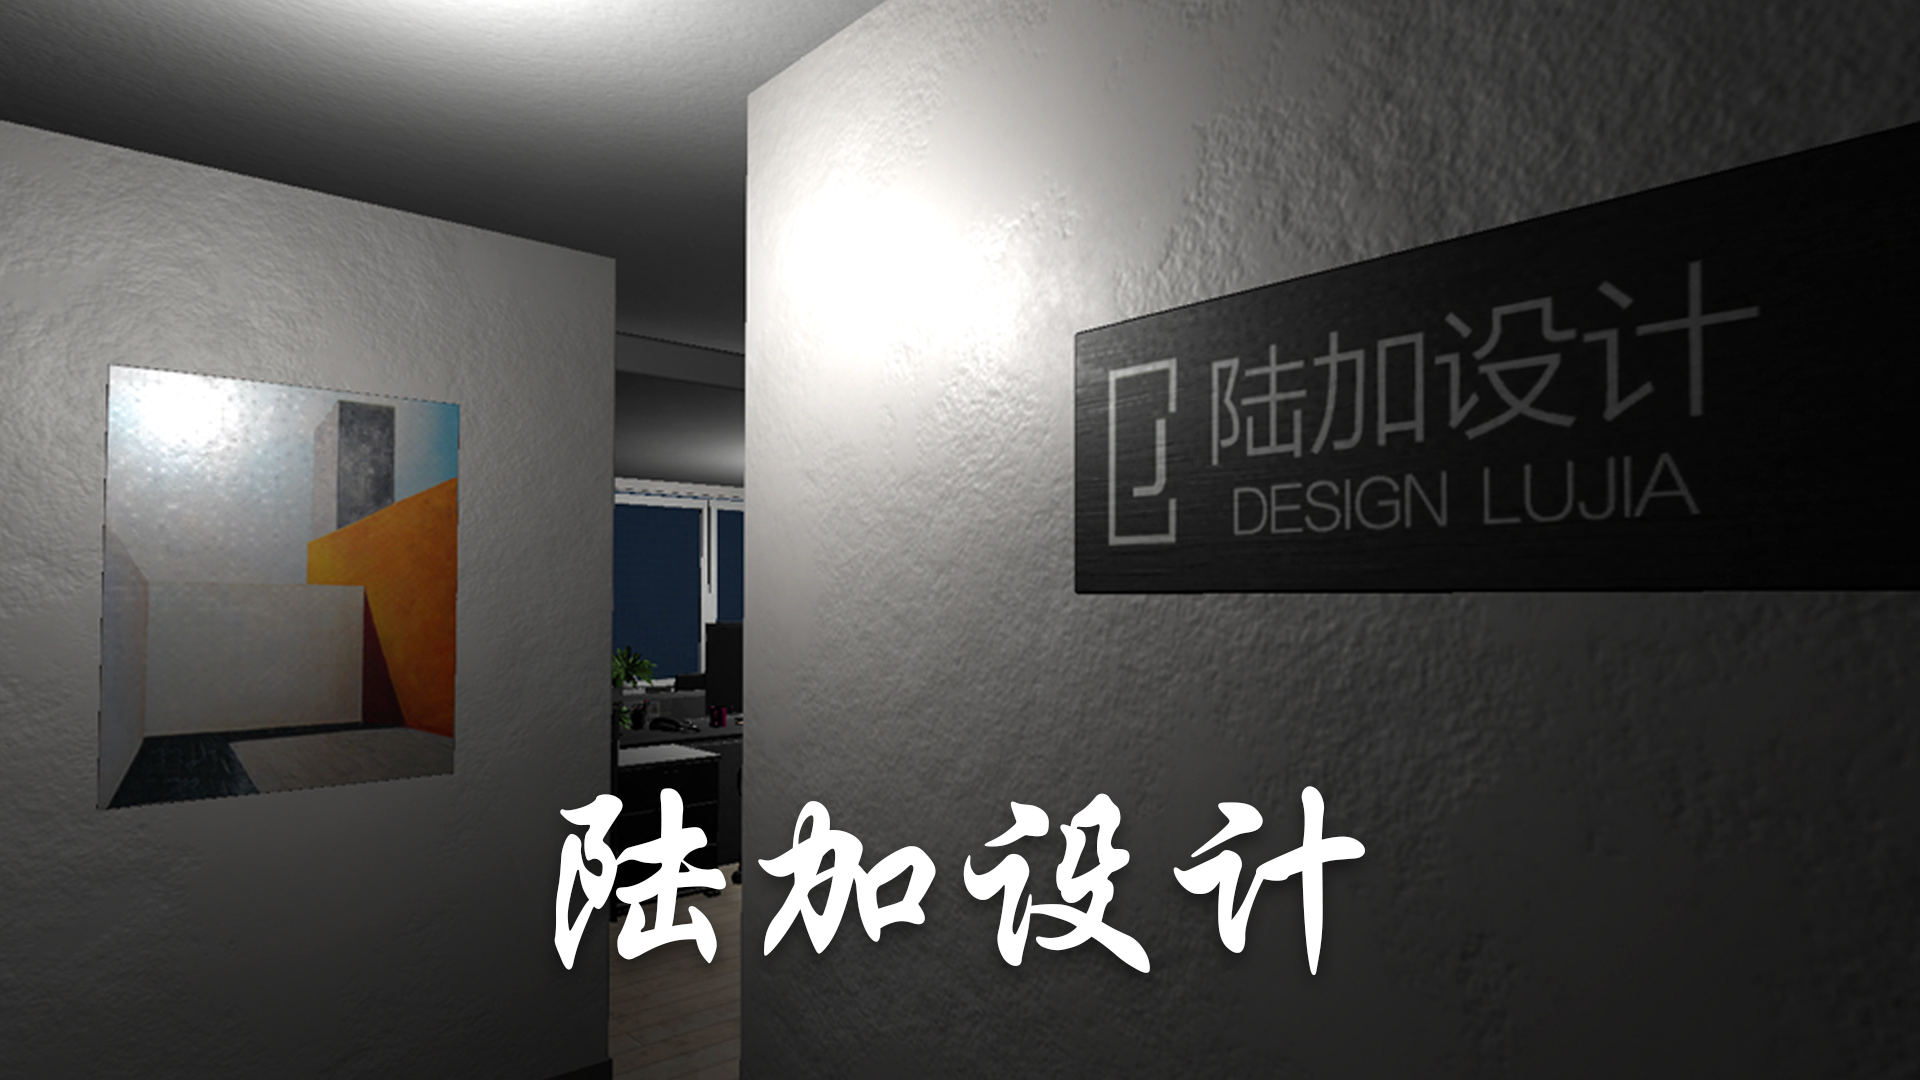 Banner of Lu Jia រចនា 1.0.0